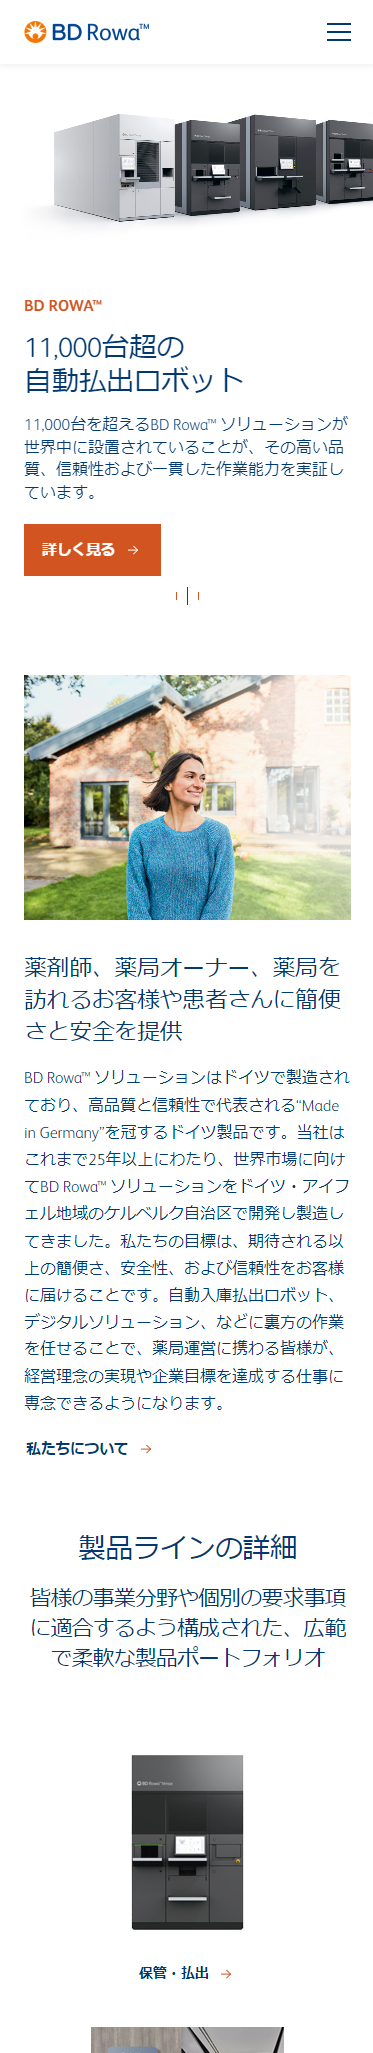 製品サイト「BD Rowa™ ソリューション」